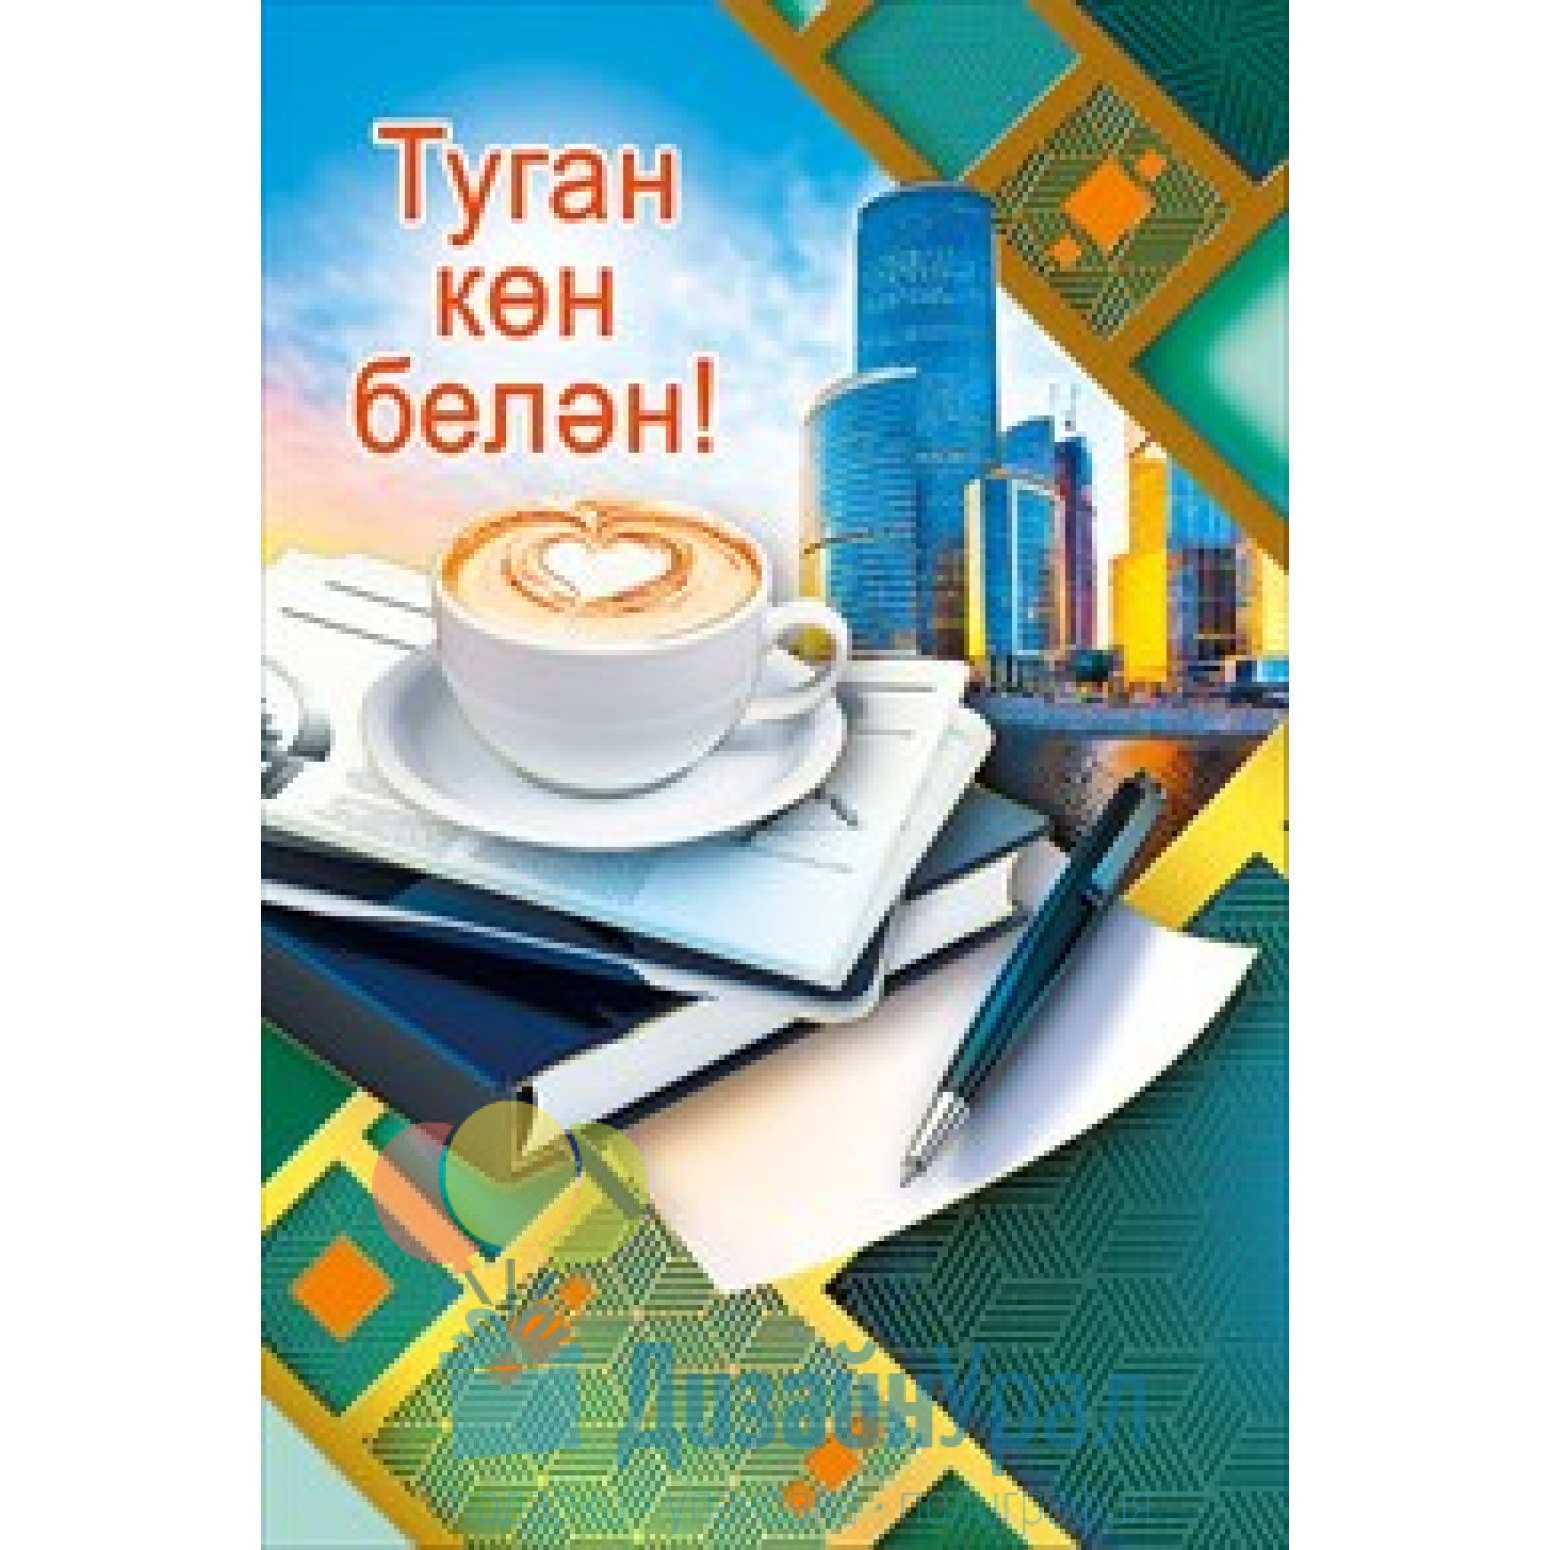 ПРИГЛАСИТЬ перевод на татарский язык